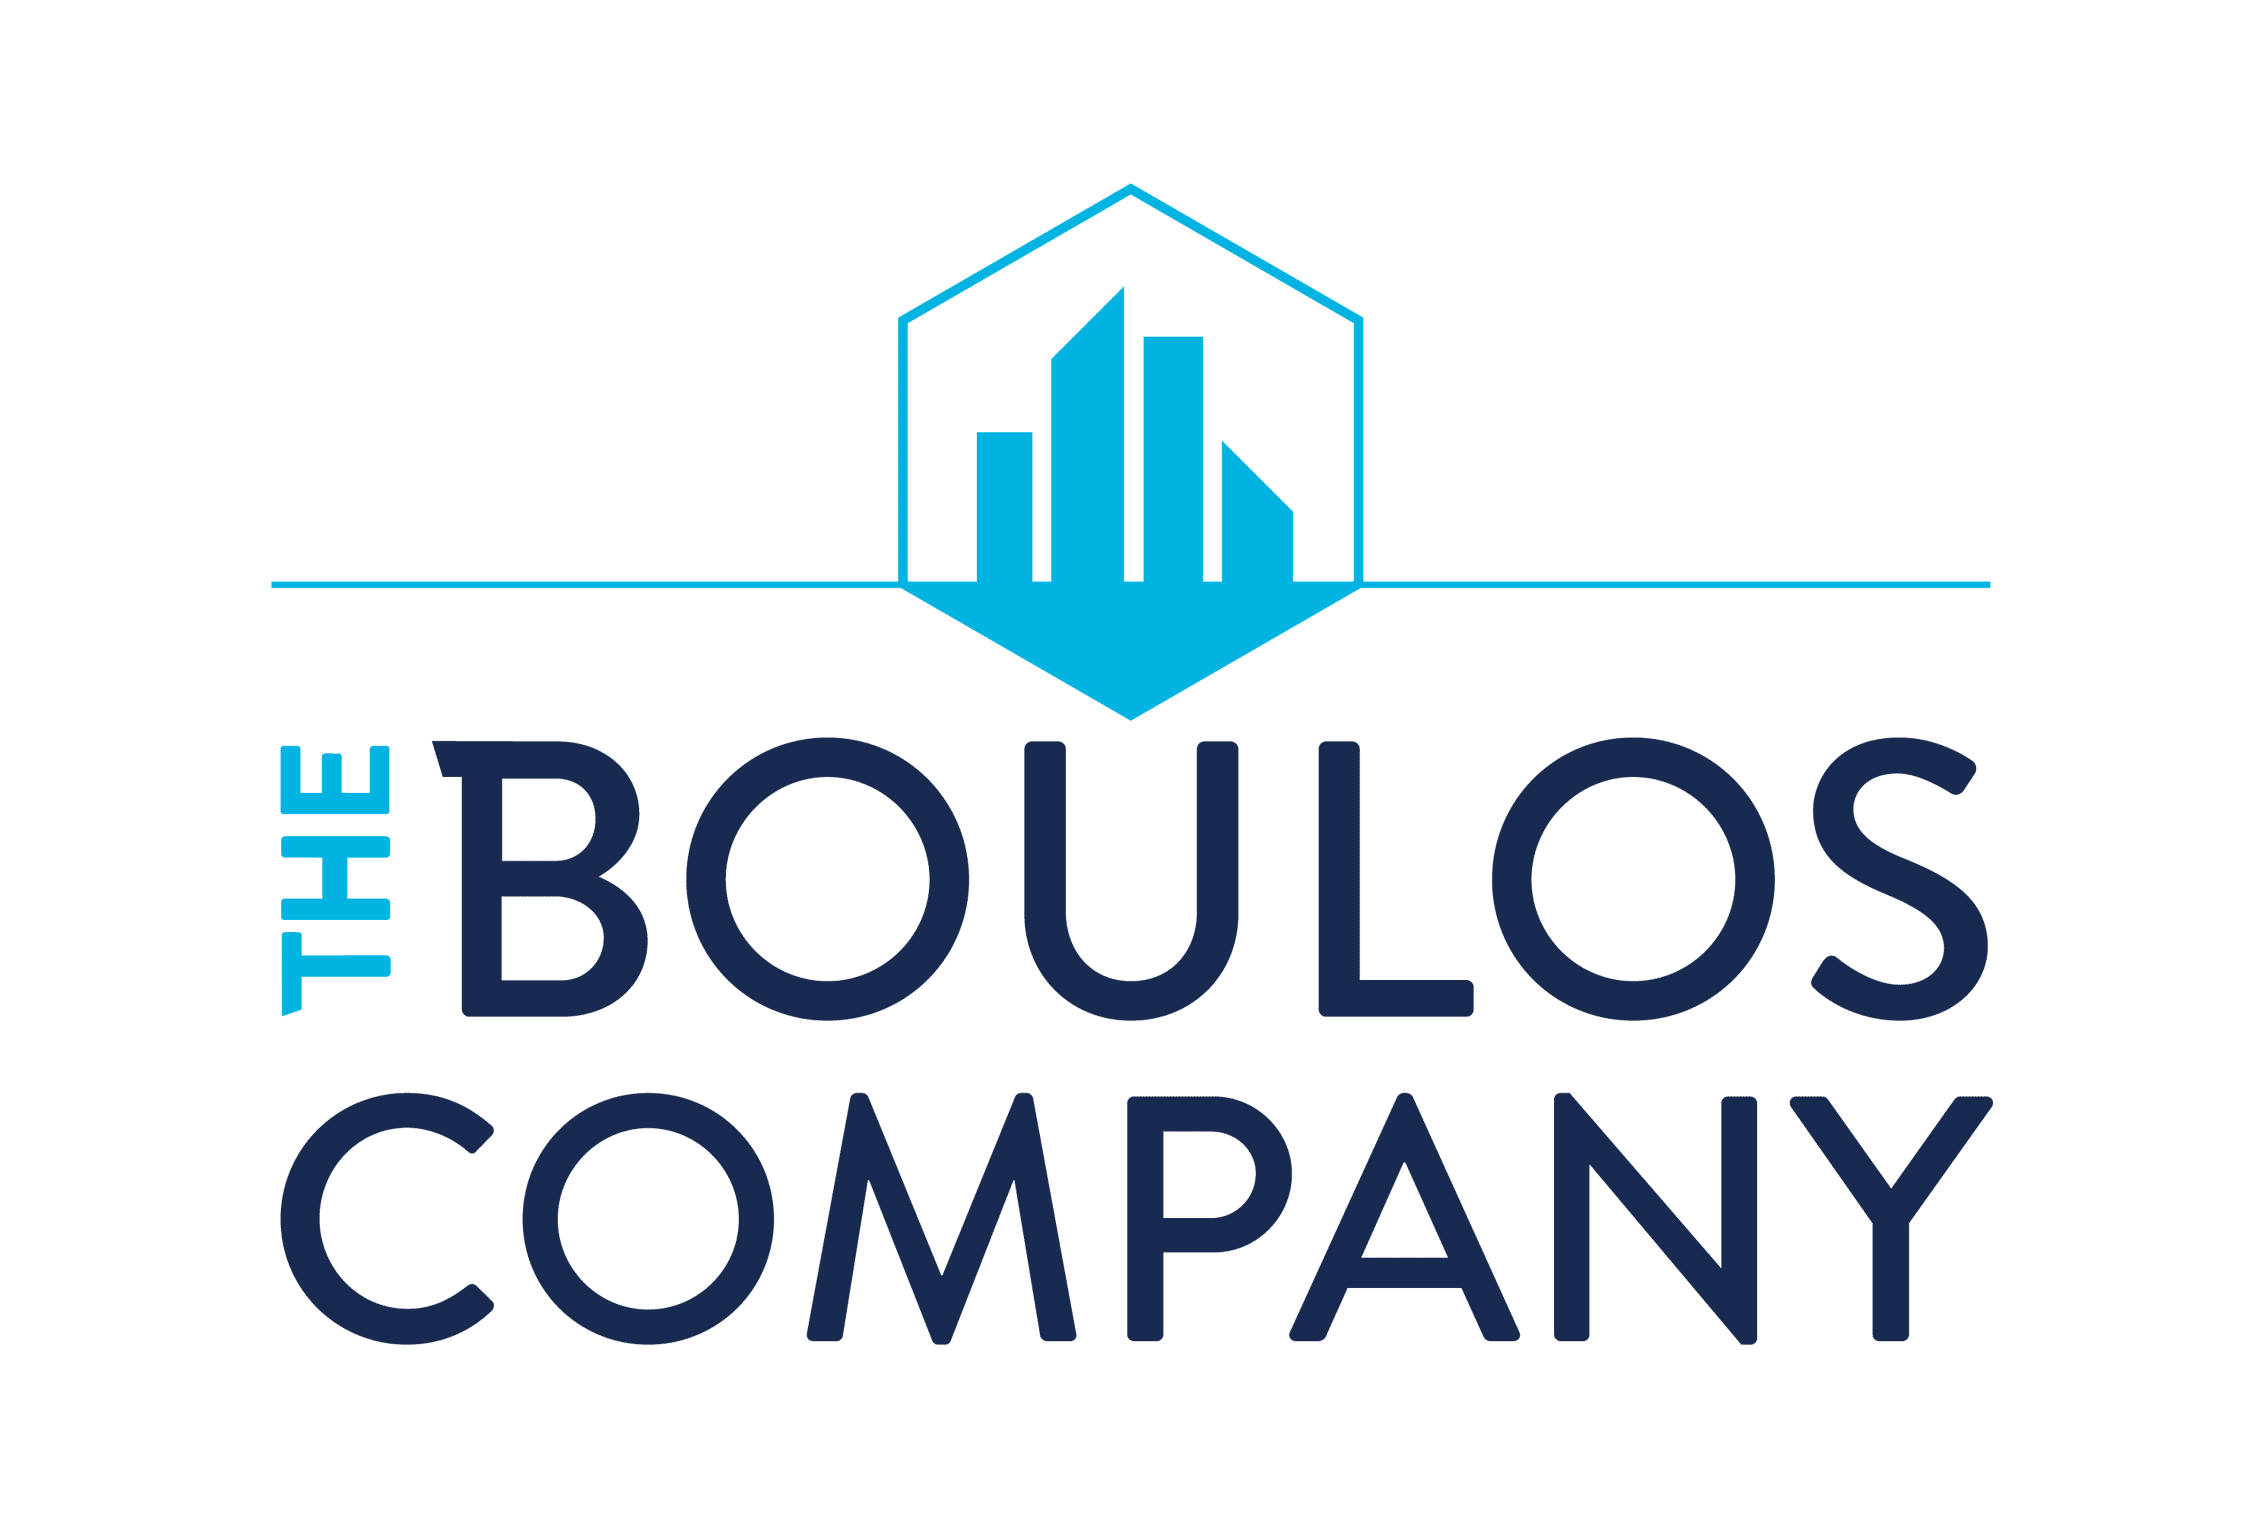 The Boulos Company